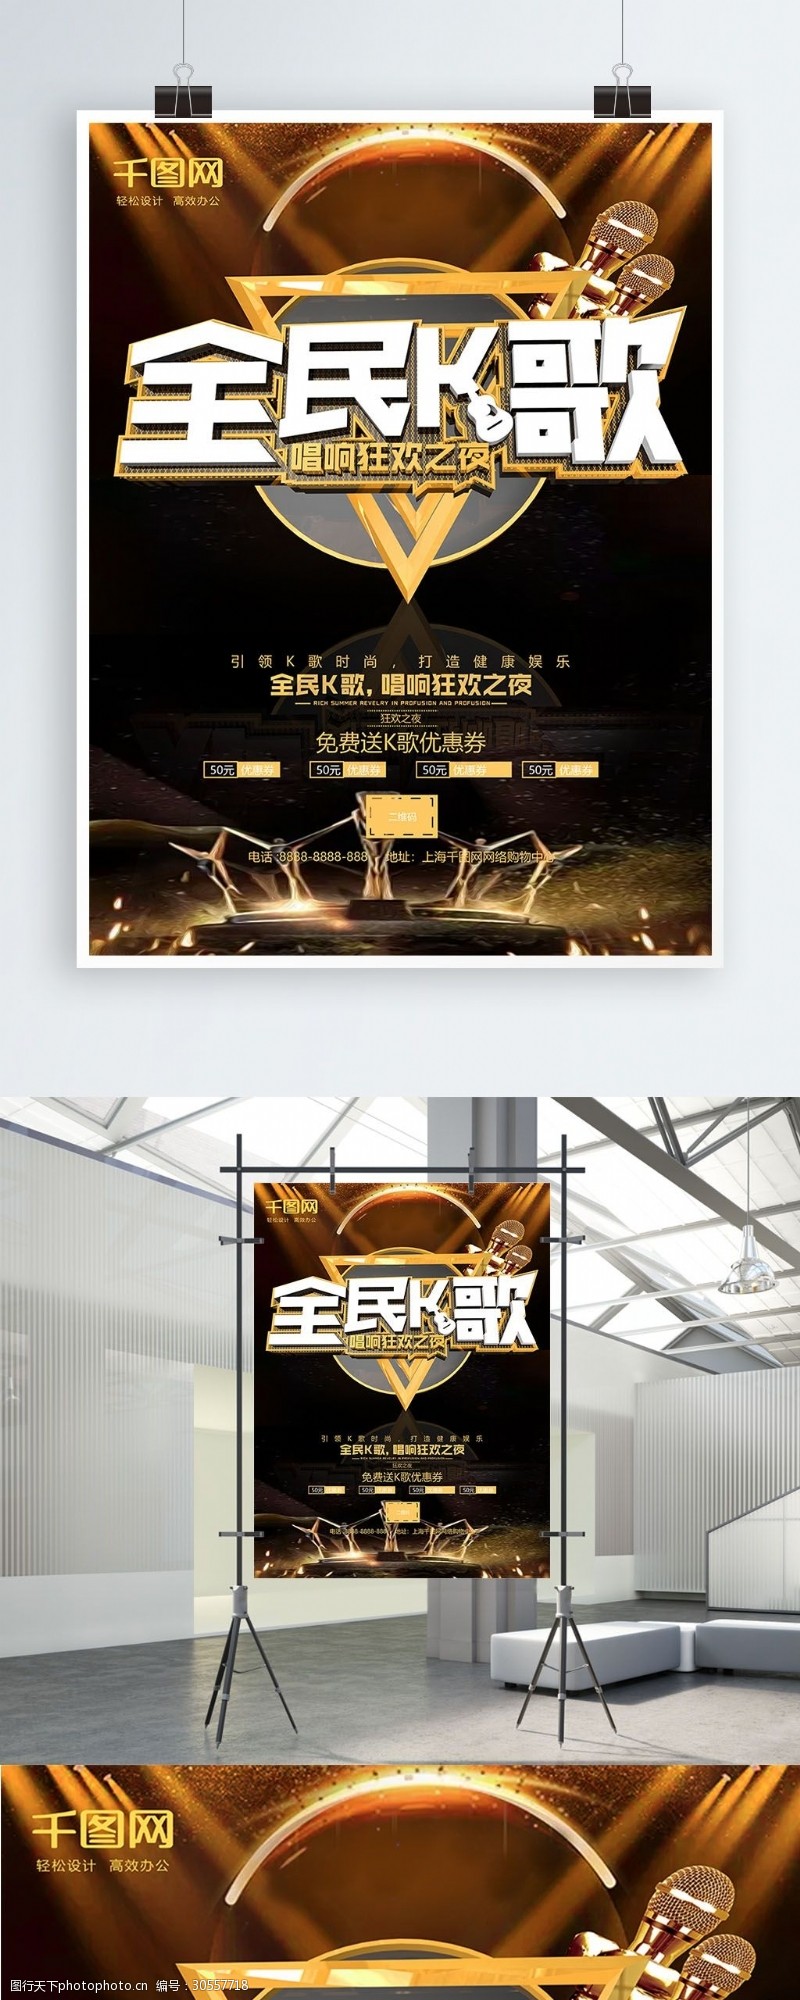 大赛海选海报全民K歌音乐节选拔梦幻金色金属质感海报